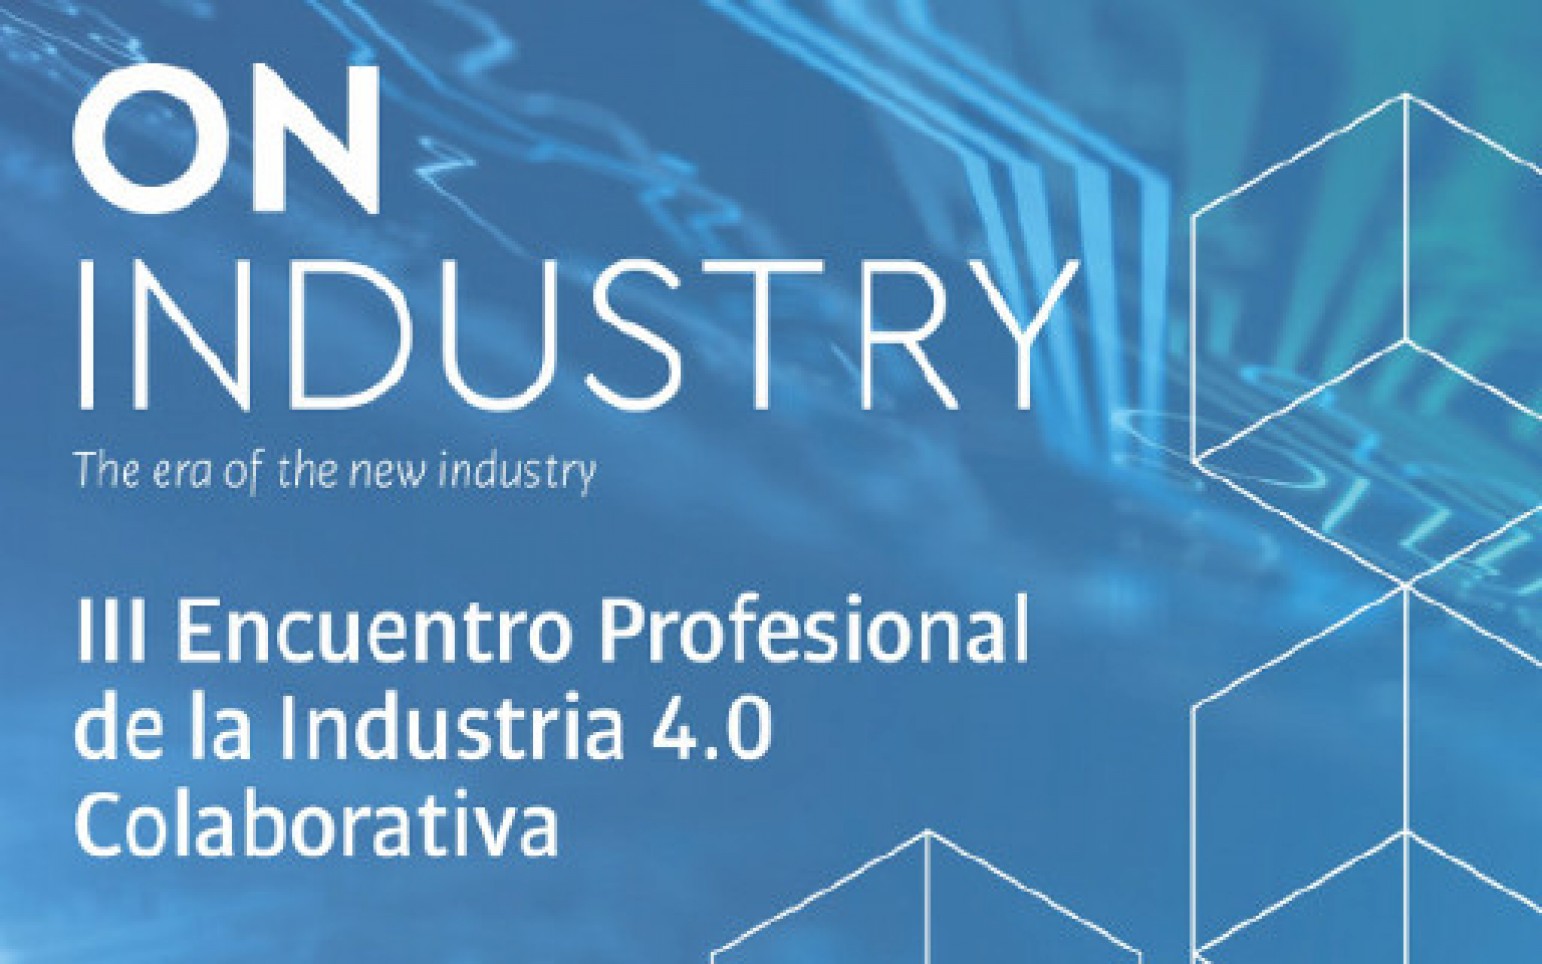 On Industry, del 12 al 13 de Abril en Córdoba